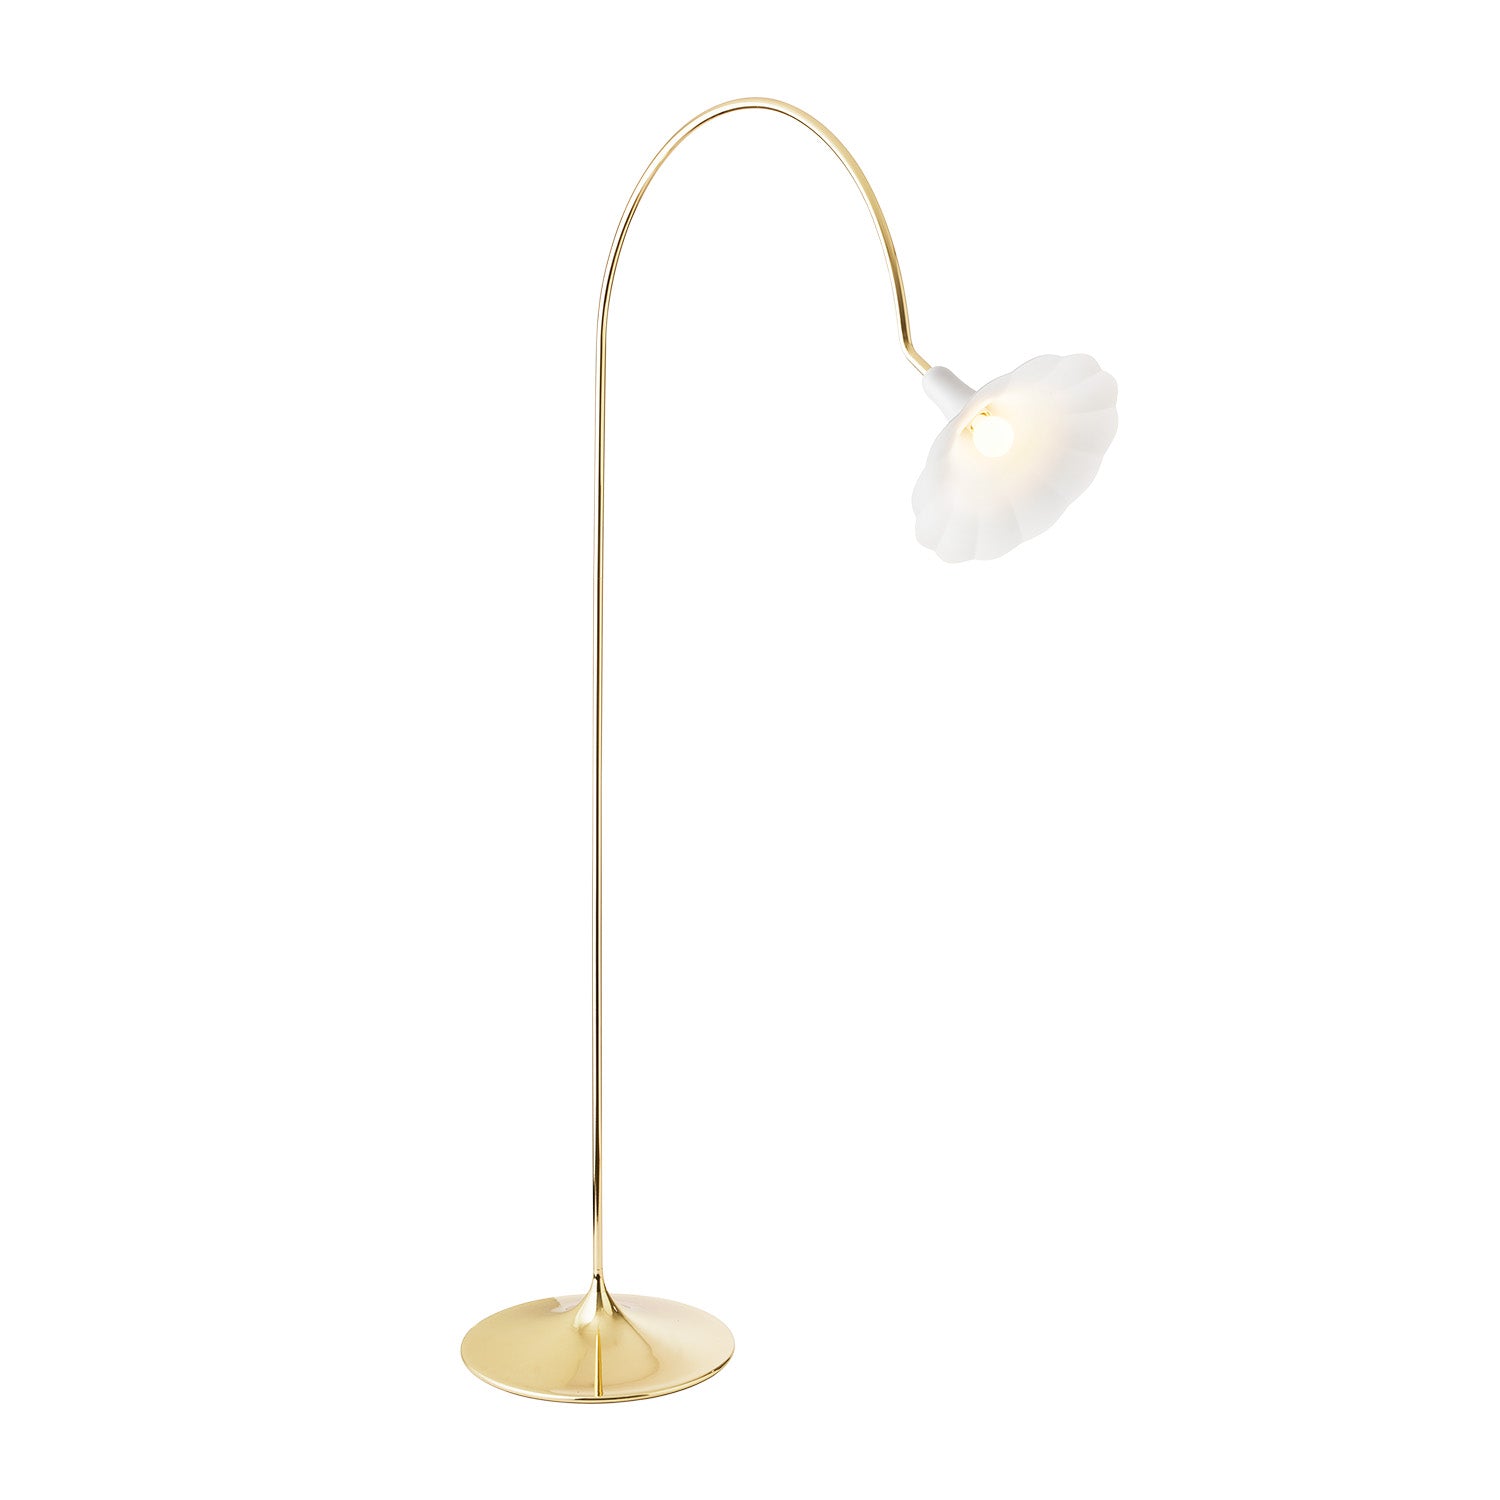 PETALII - Elegant white and polished gold flower floor lamp